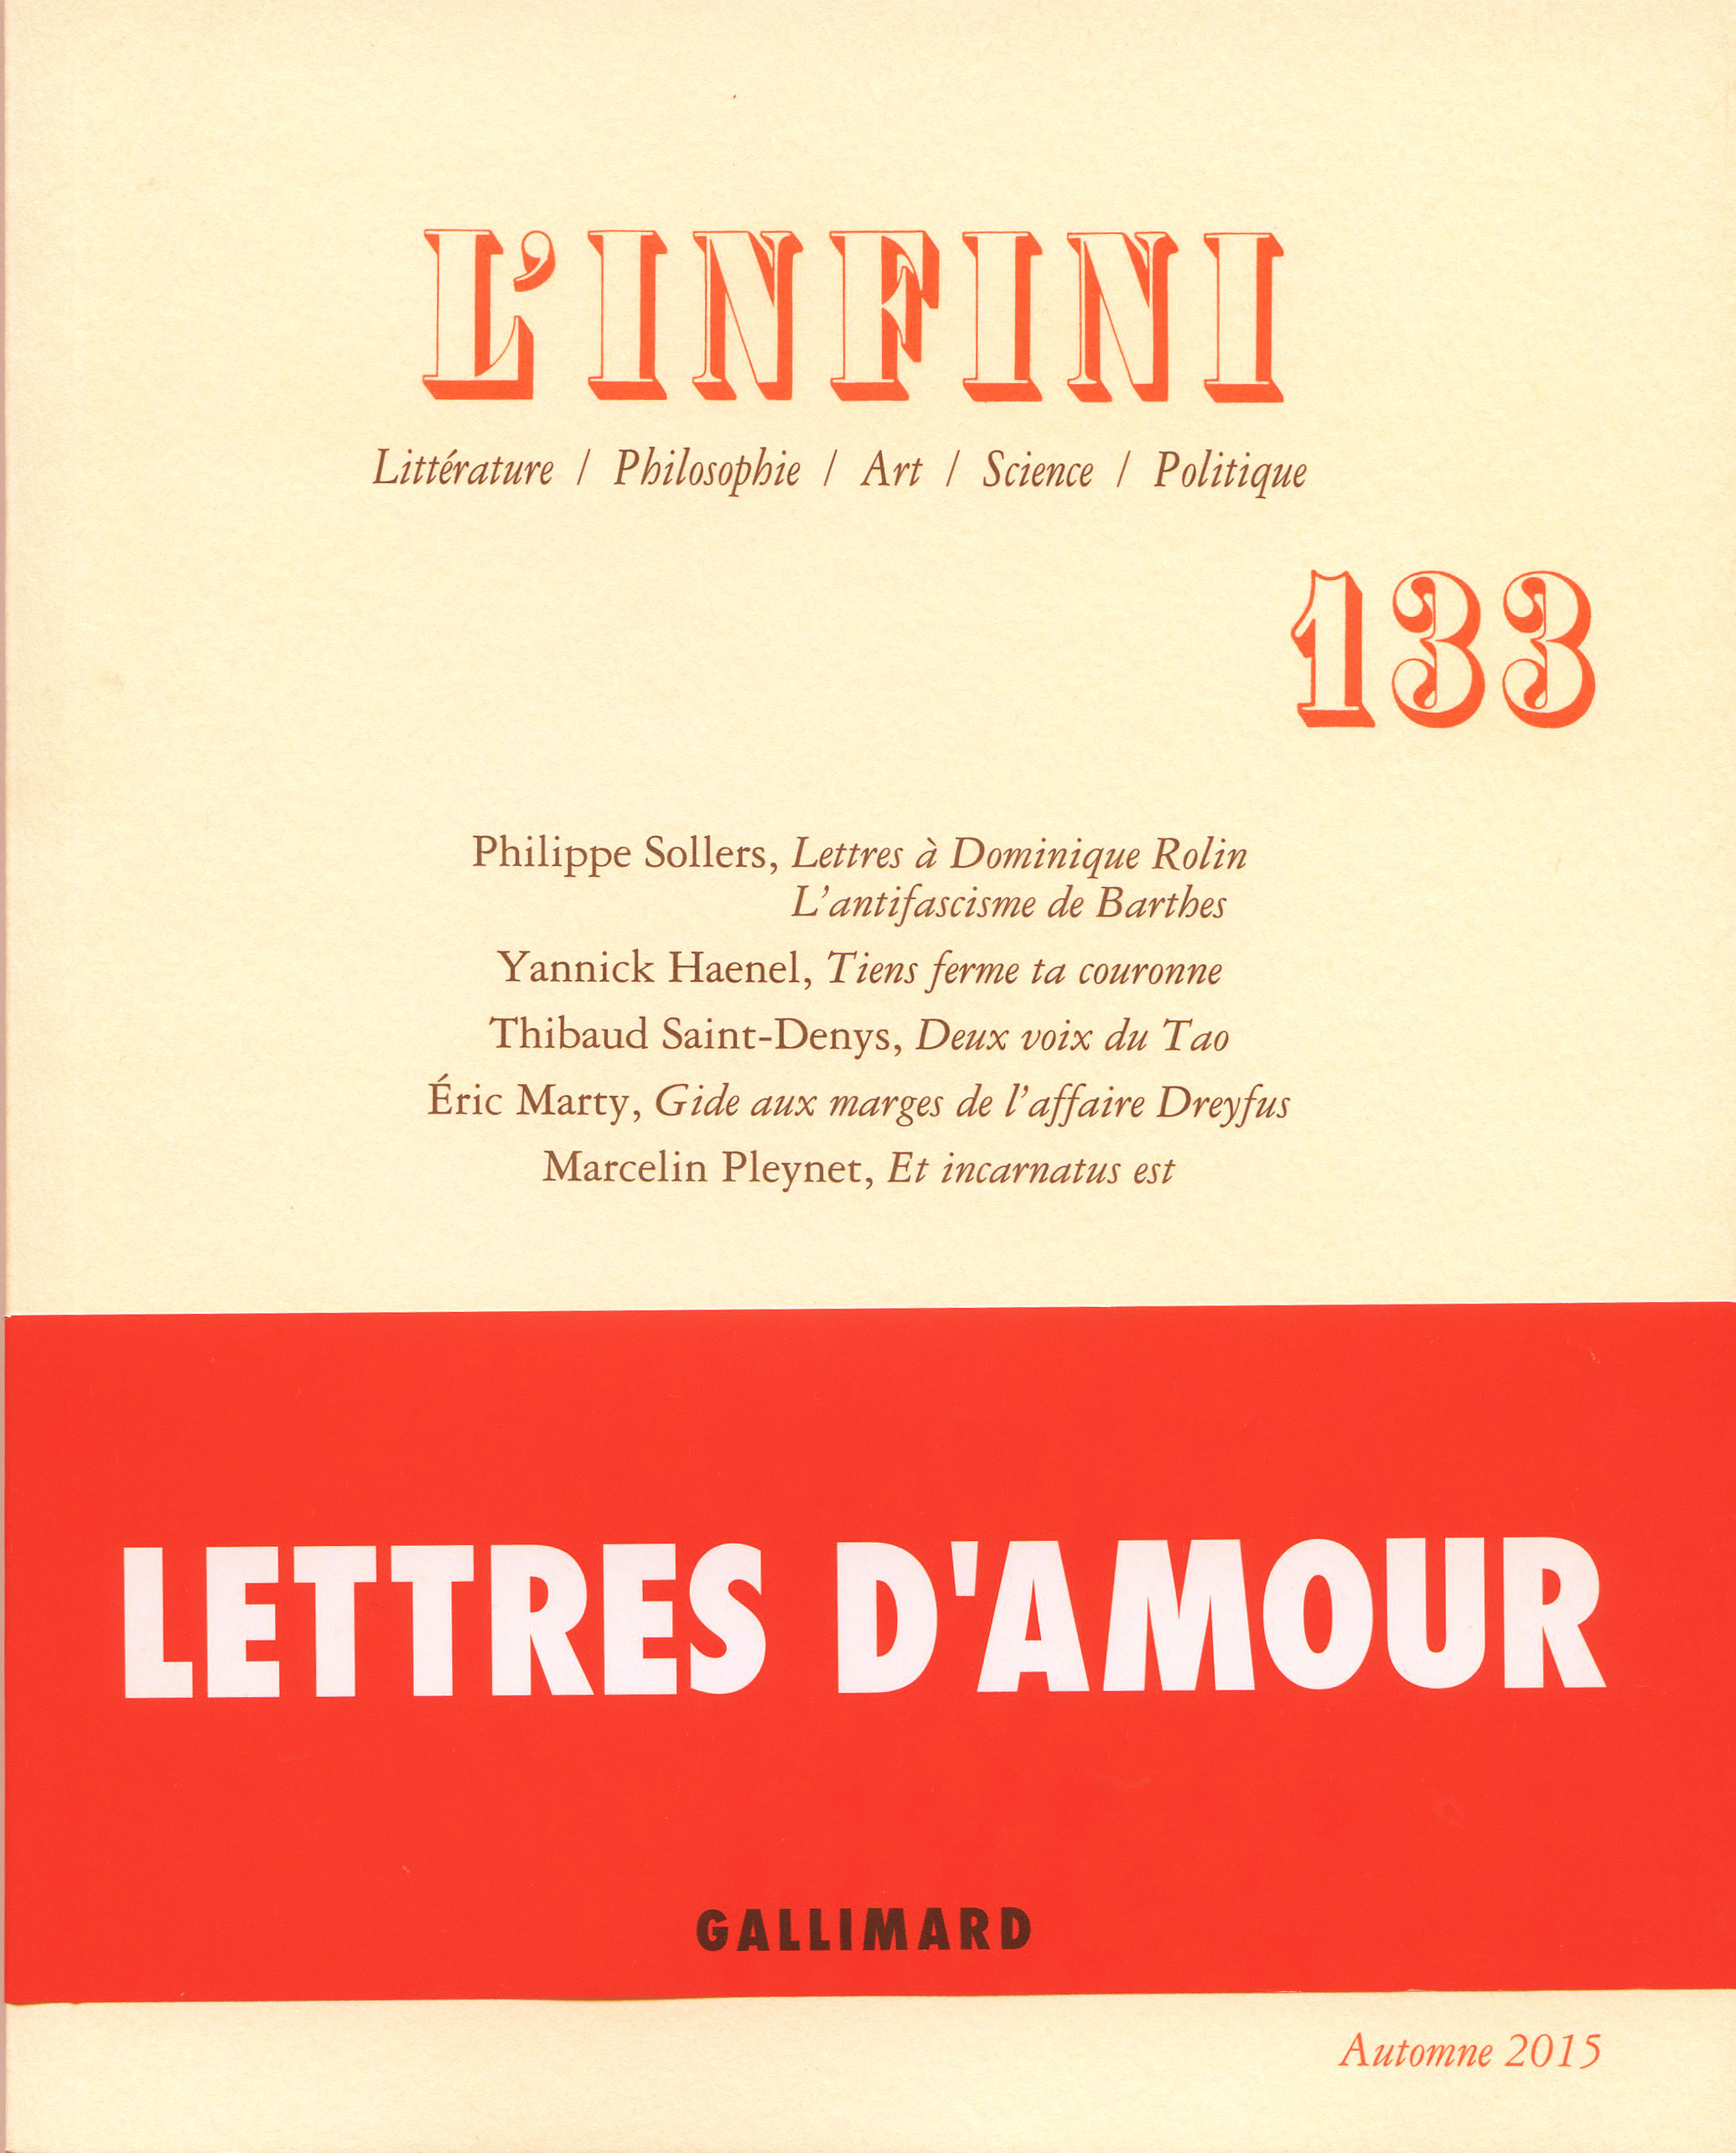 revue L'Infini 132 - Pascal / Voltaire